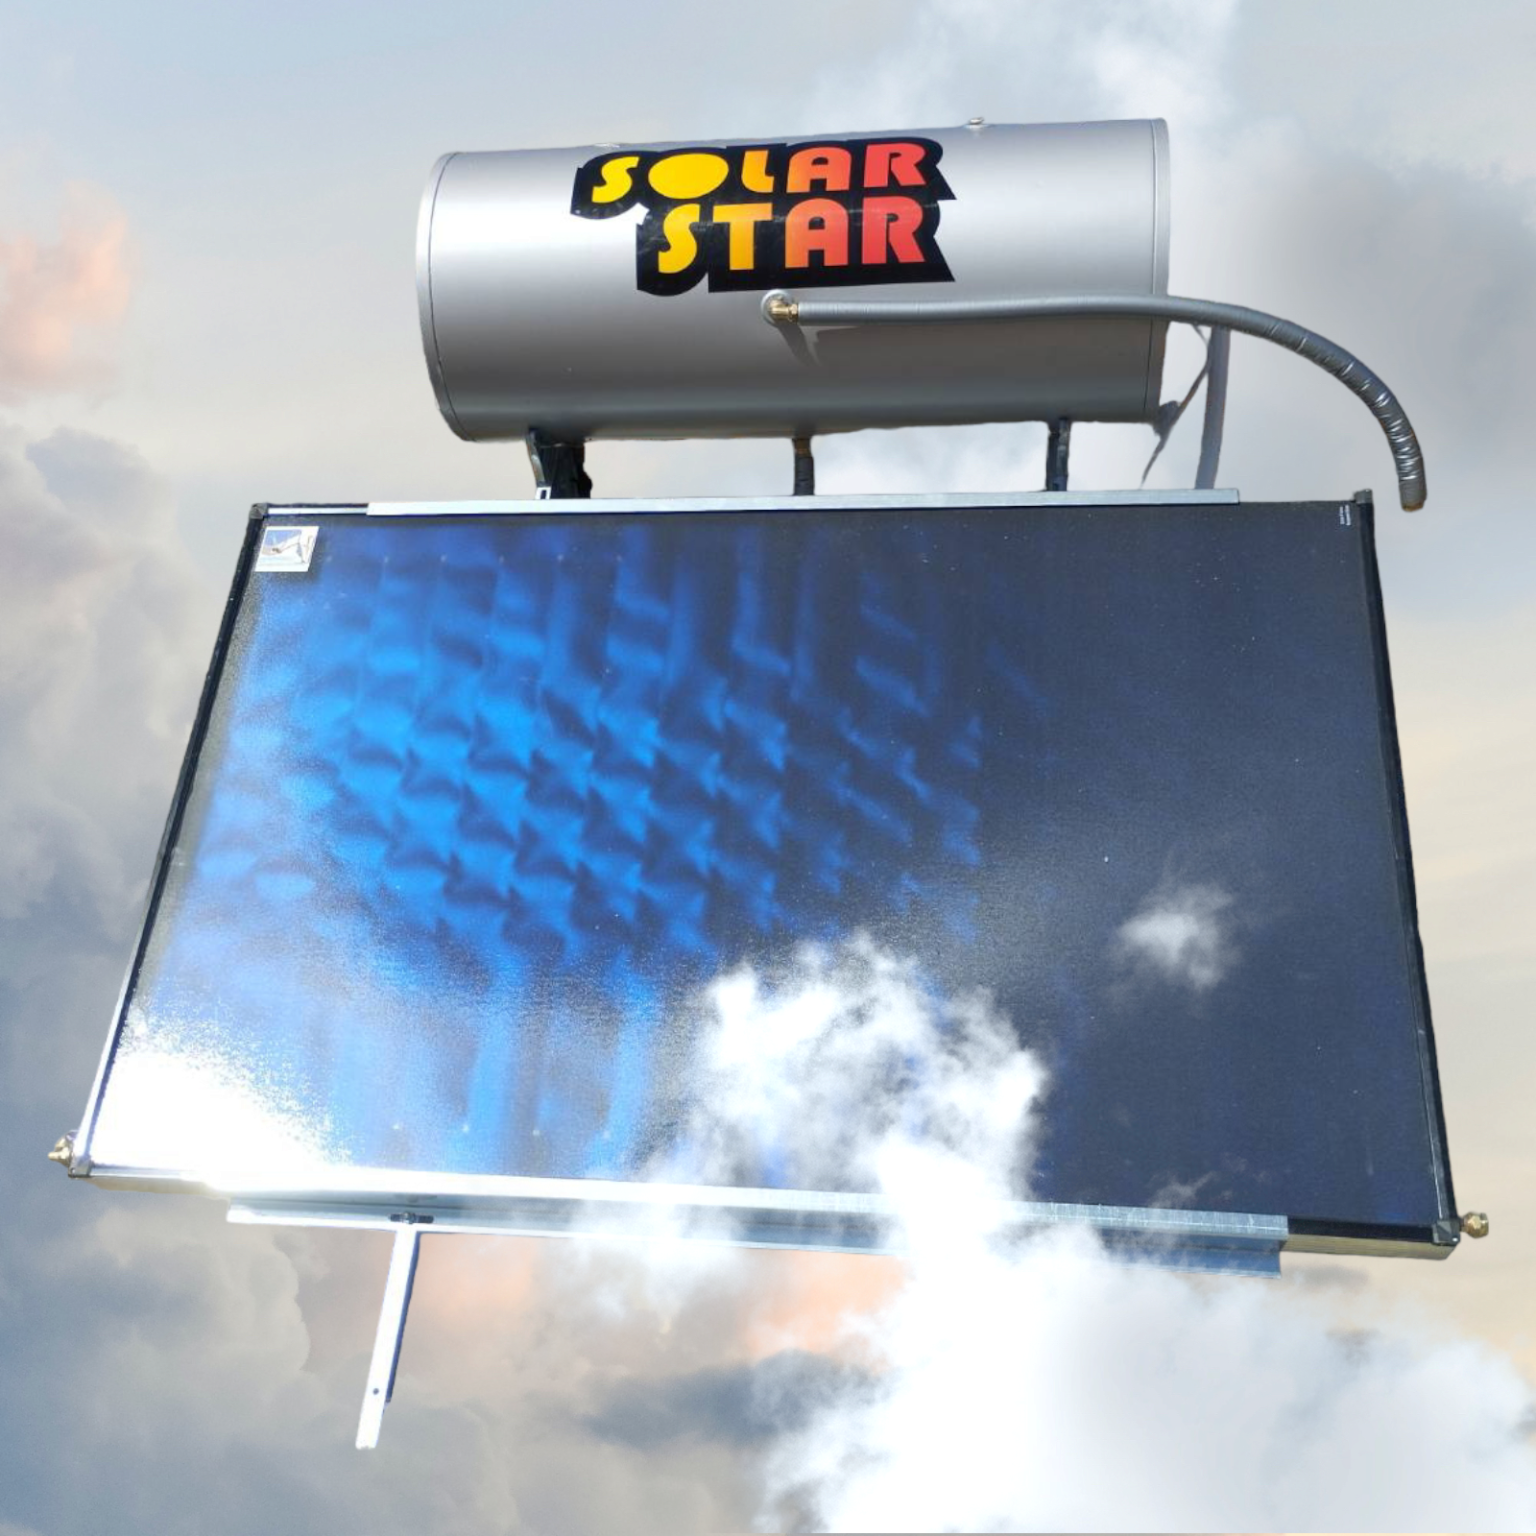 ηλιακός θερμοσίφωνας Solar star 160lt/2,37tm² οριζοντιος Glass  Διπλής ενεργείας -Επιλεκτικός οριζόντιος συλλέκτης-Ως 3 Άτοκες Δόσεις